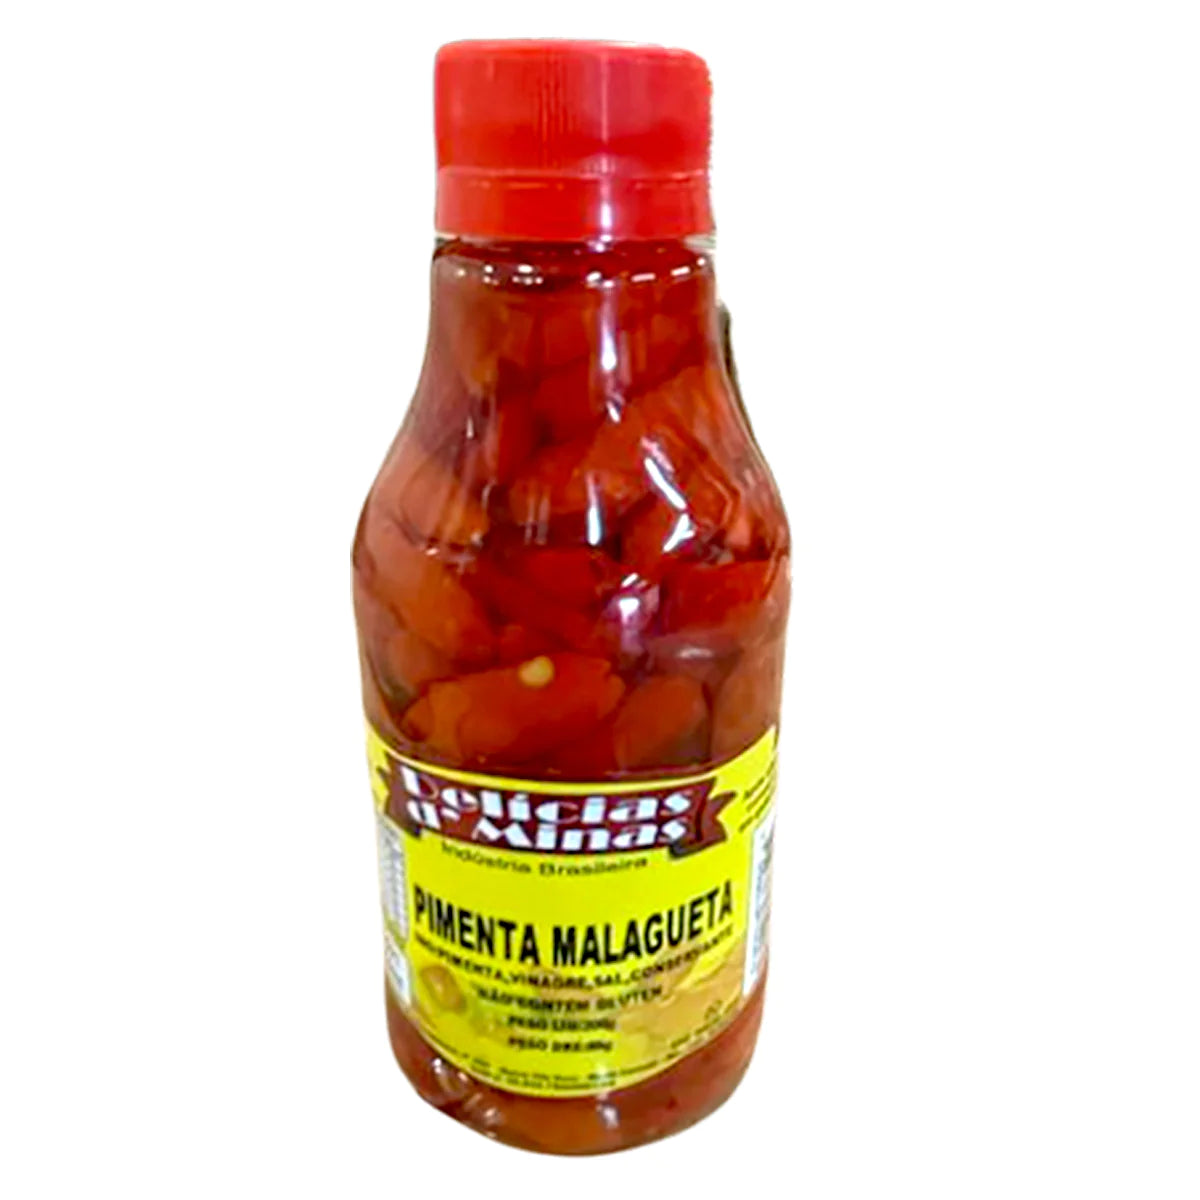 Delicias D Minas Malagueta Pepper/ Pimenta Malagueta 85g